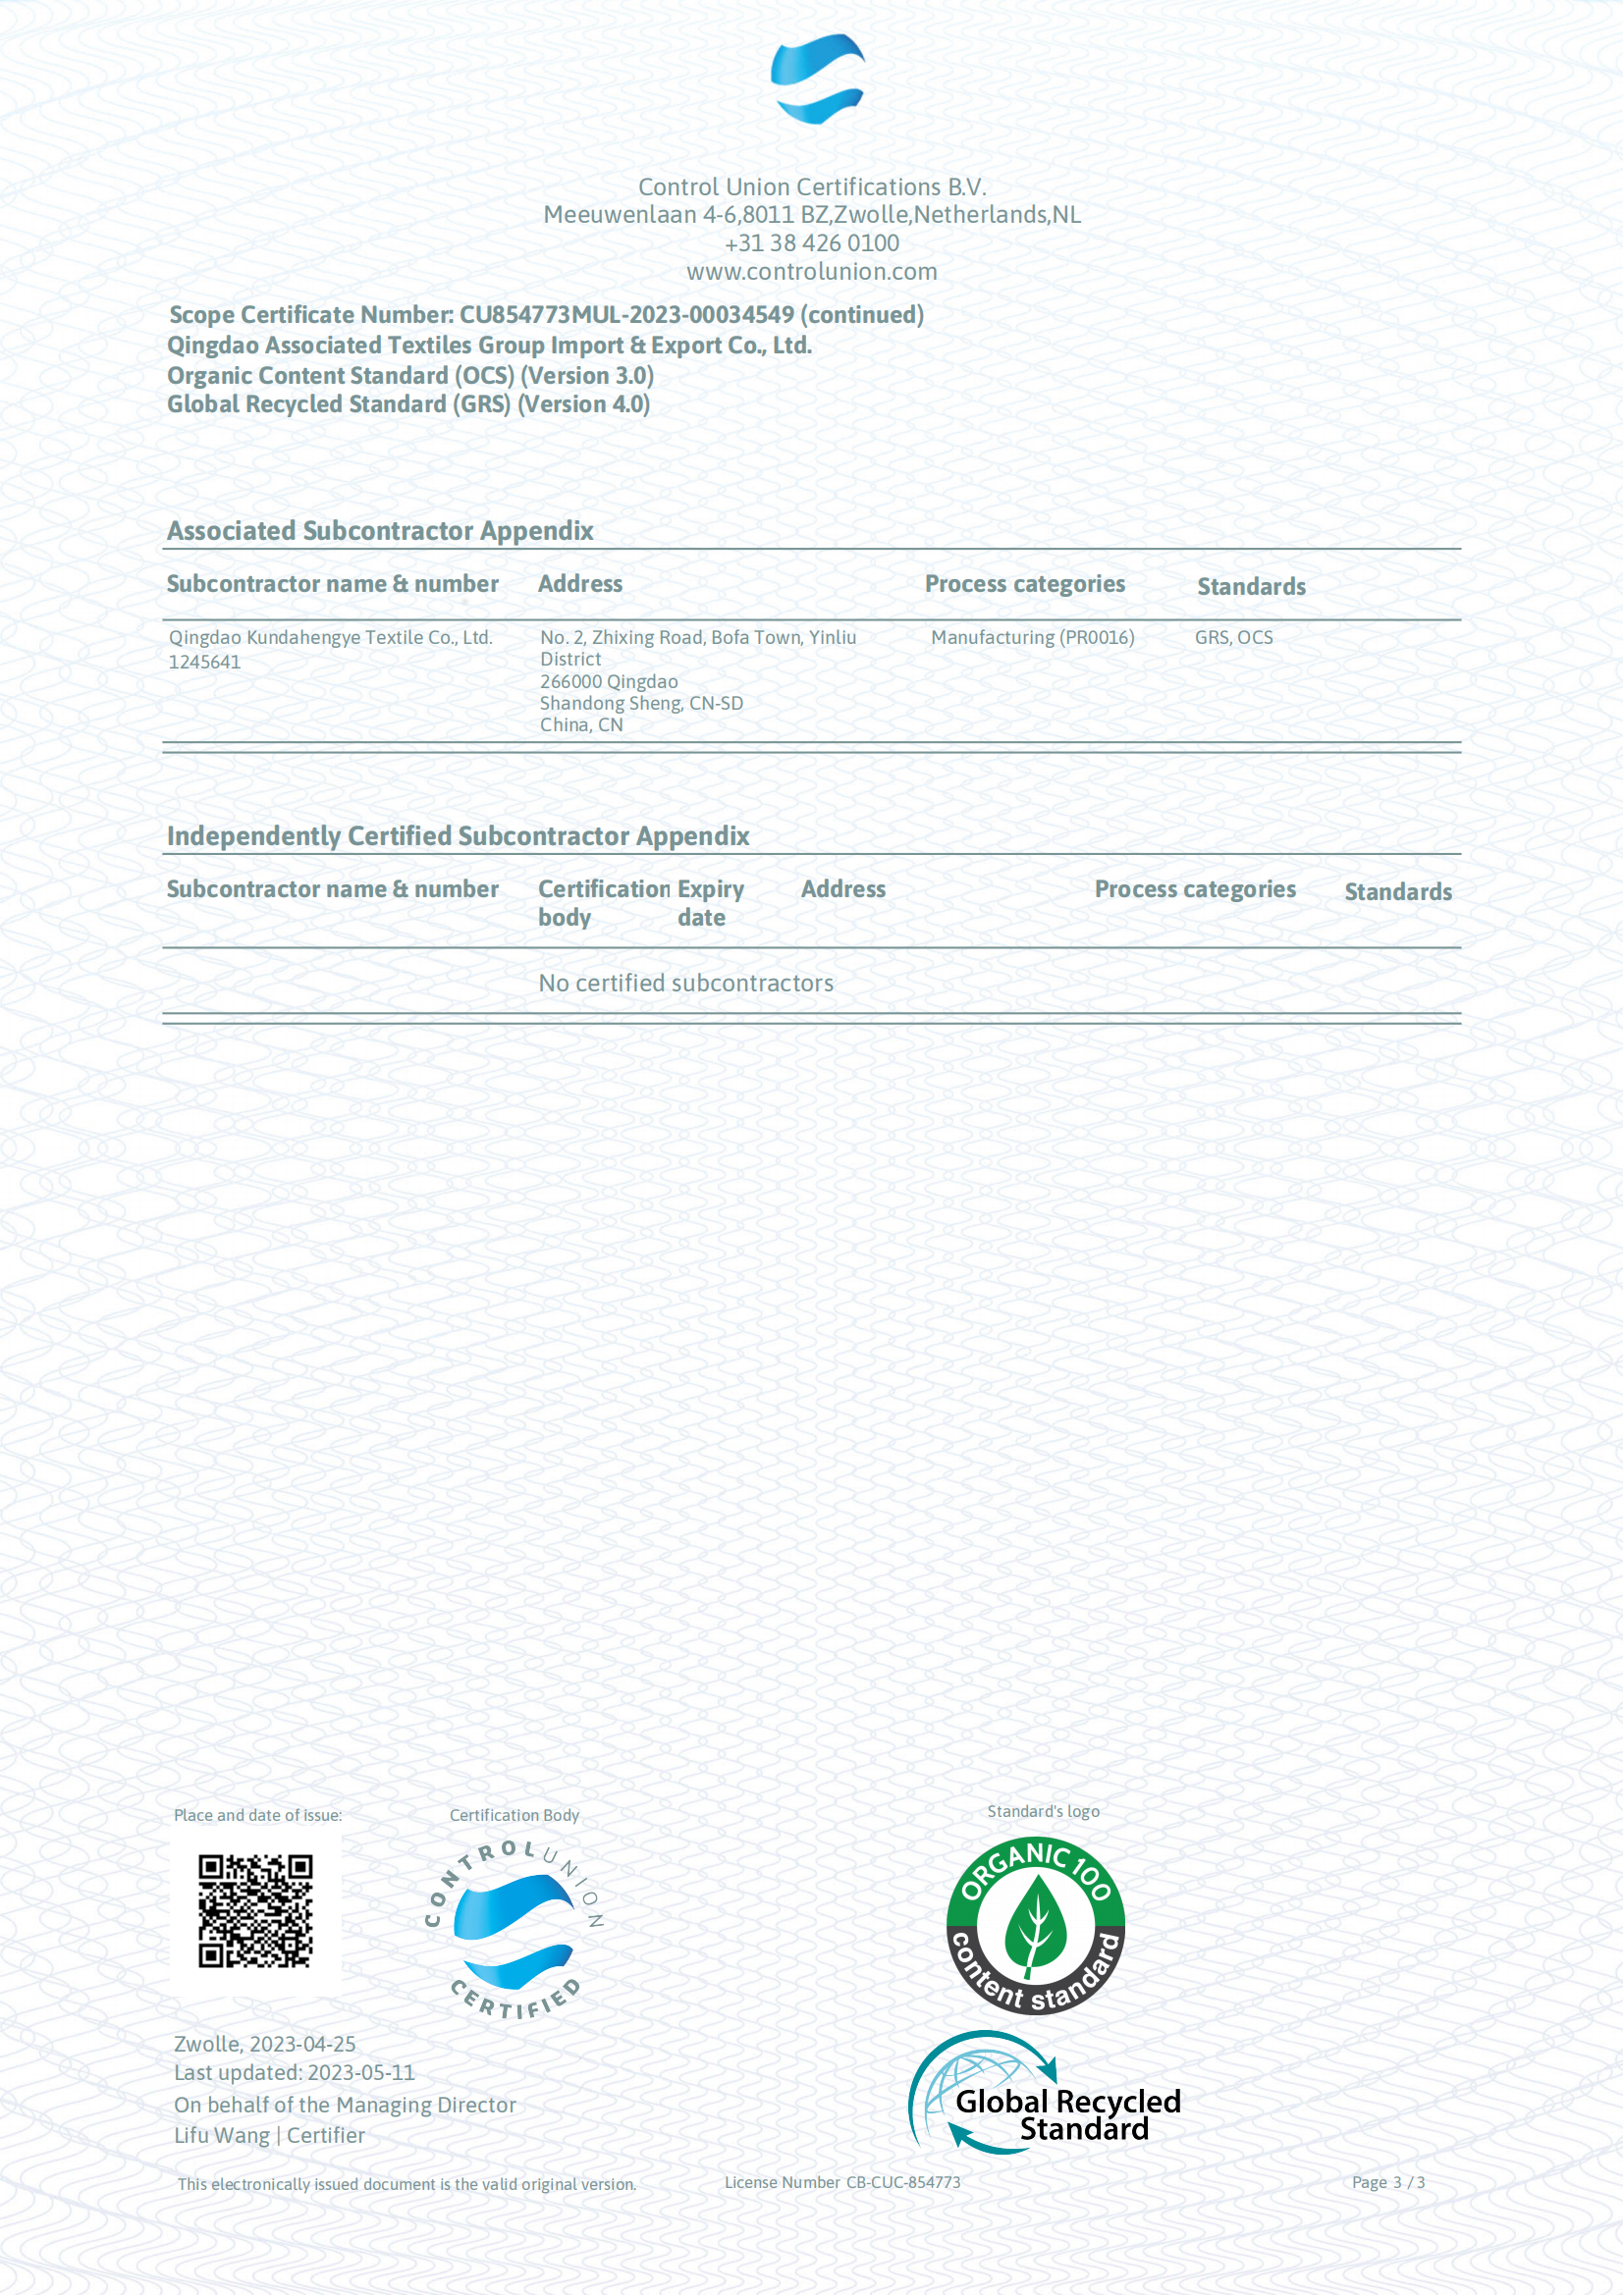 MUL_Scope_Certificate_2023-05-11 04_26_45 UTC_02.png